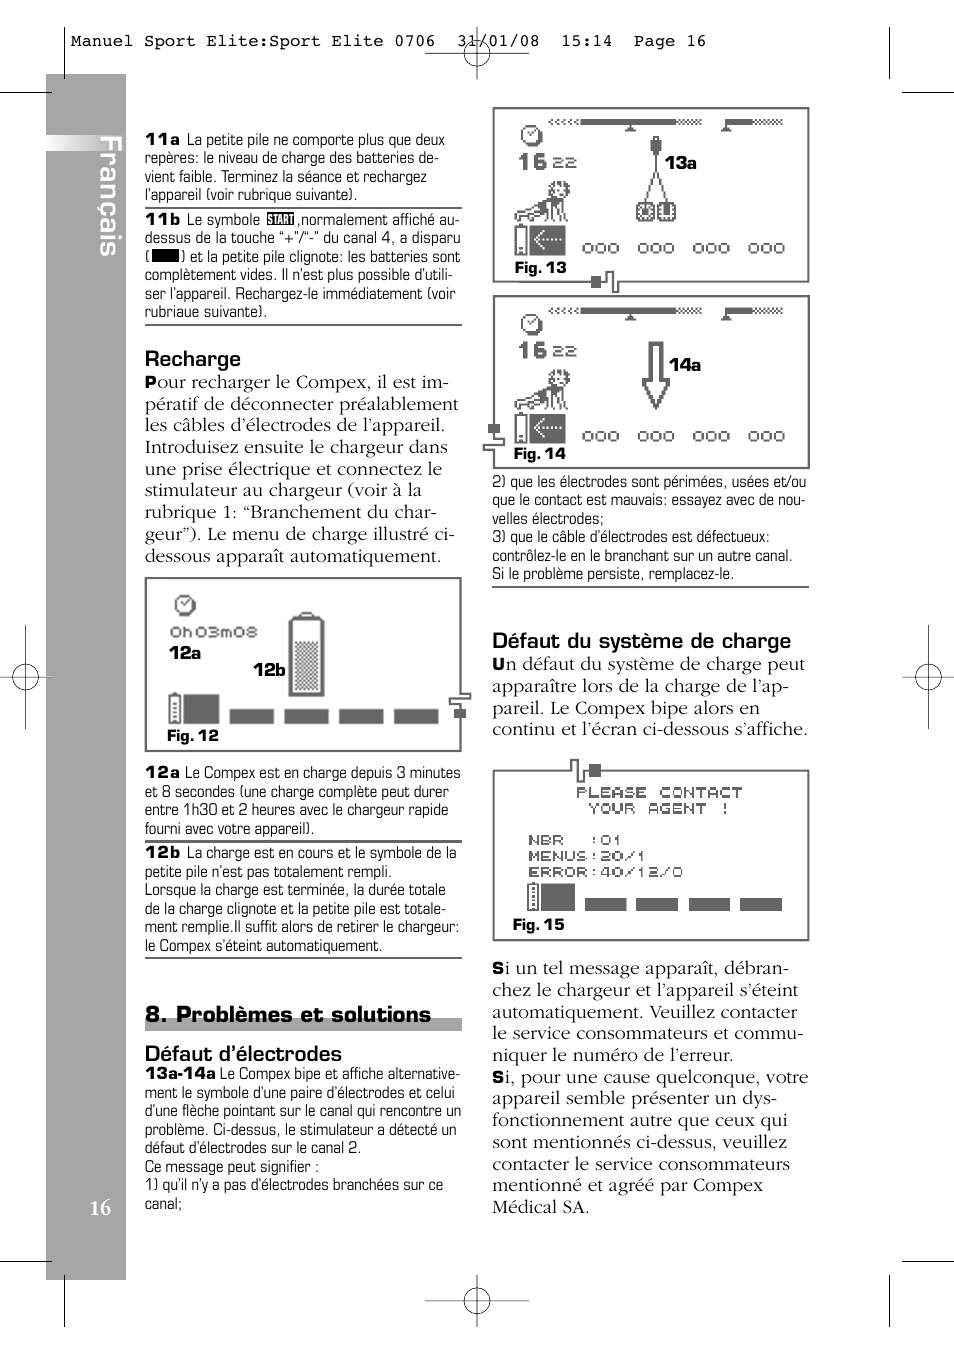 Français, Problèmes et solutions | Compex Sport Elite User Manual | Page 16  / 320